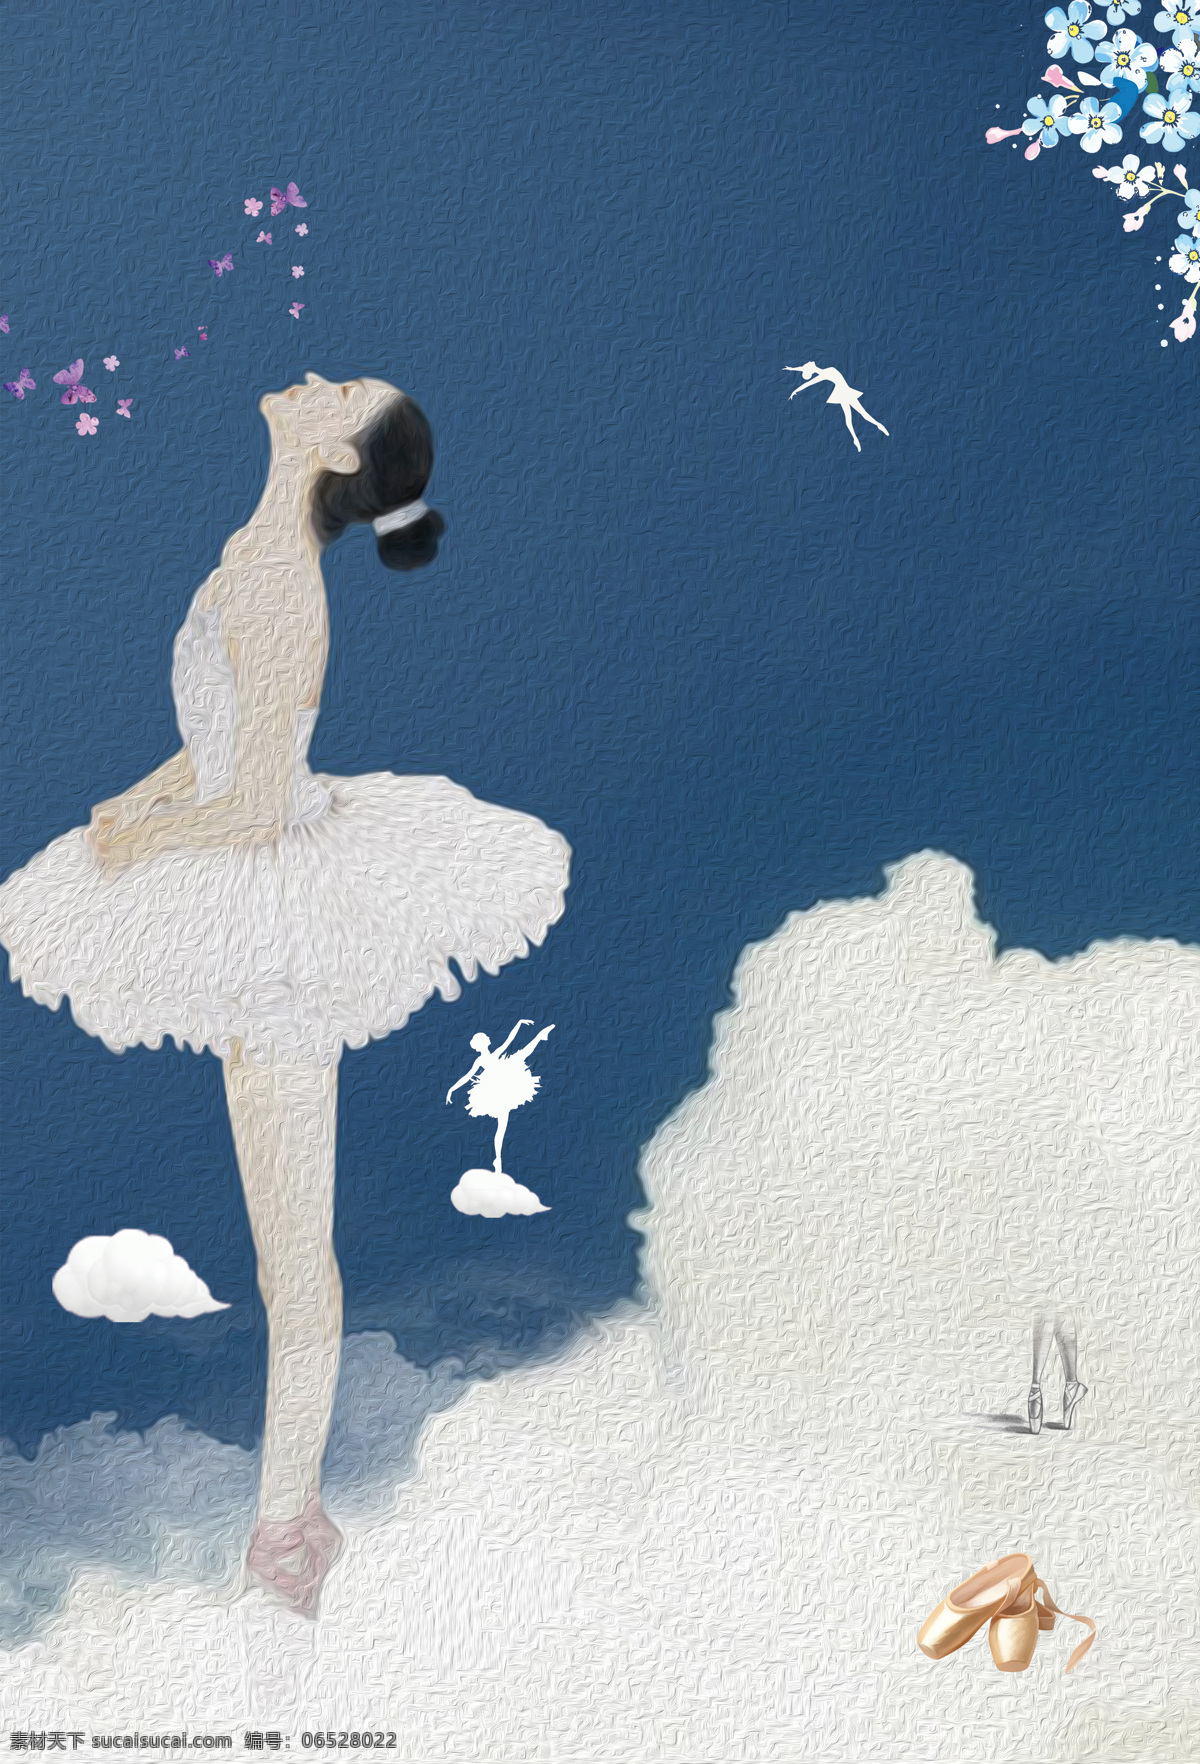 浪漫 芭蕾 舞蹈 背景 宣传 蓝色 底纹 云朵 油画 白衣小天鹅 芭蕾舞蹈 广告背景